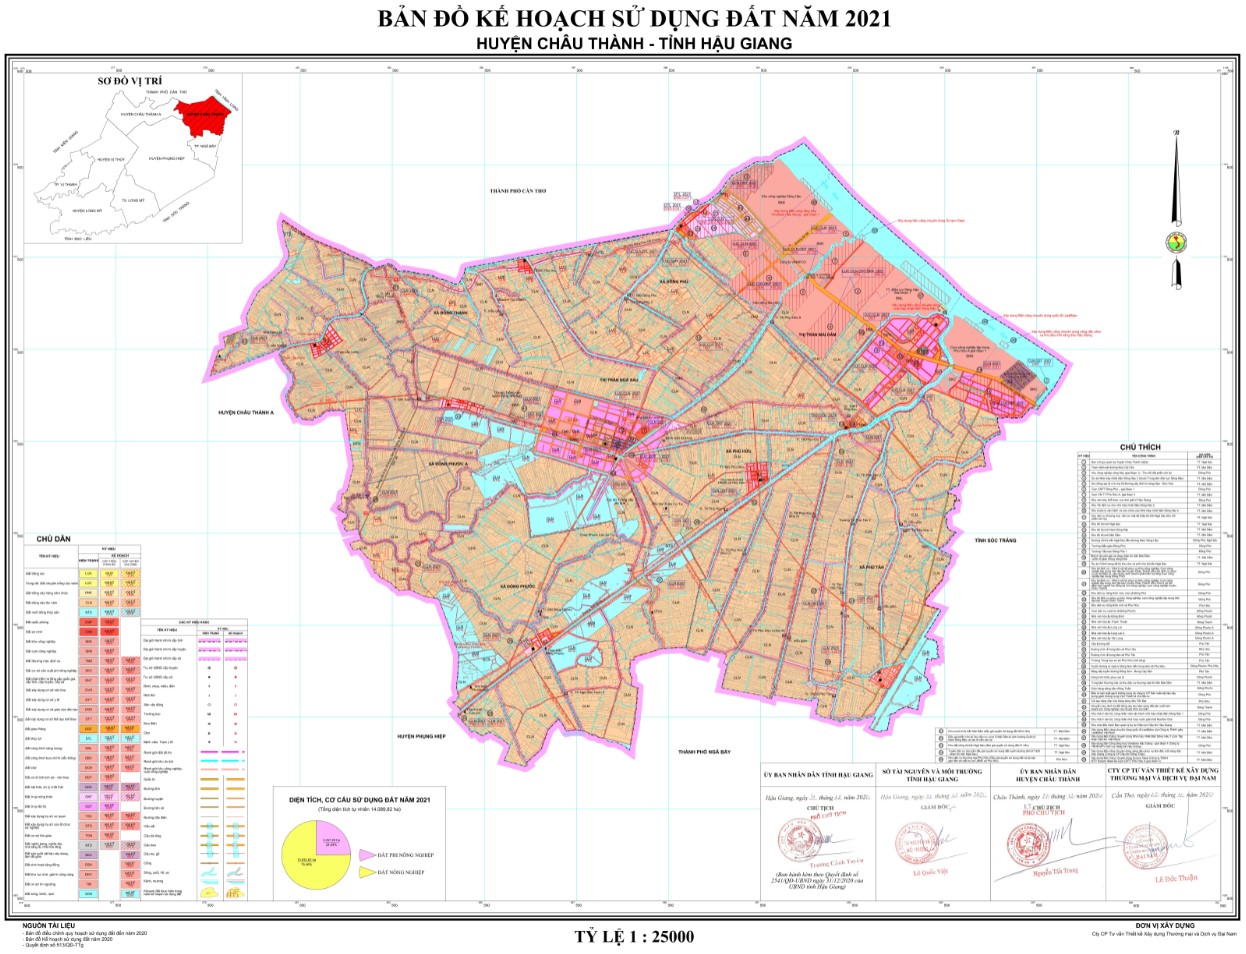 Quy hoạch sử dụng đất Huyện Châu Thành, Hậu Giang năm 2021